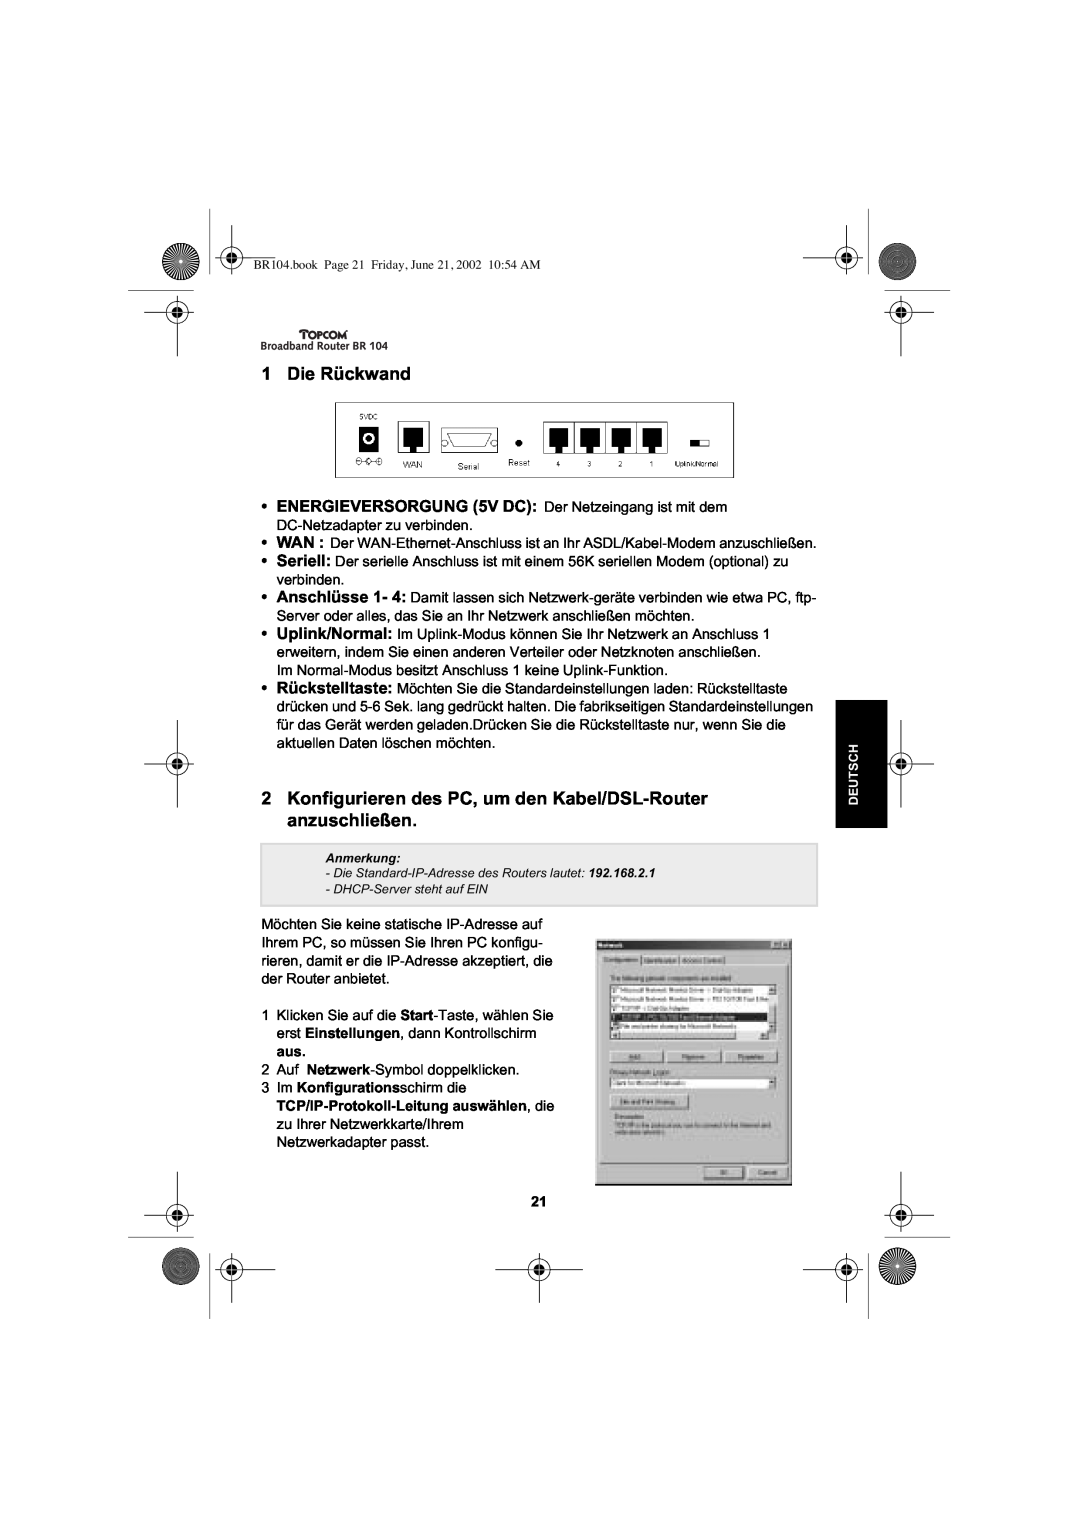 Topcom BR 104 manual Die Rückwand, Konfigurieren des PC, um den Kabel/DSL-Router anzuschließen 